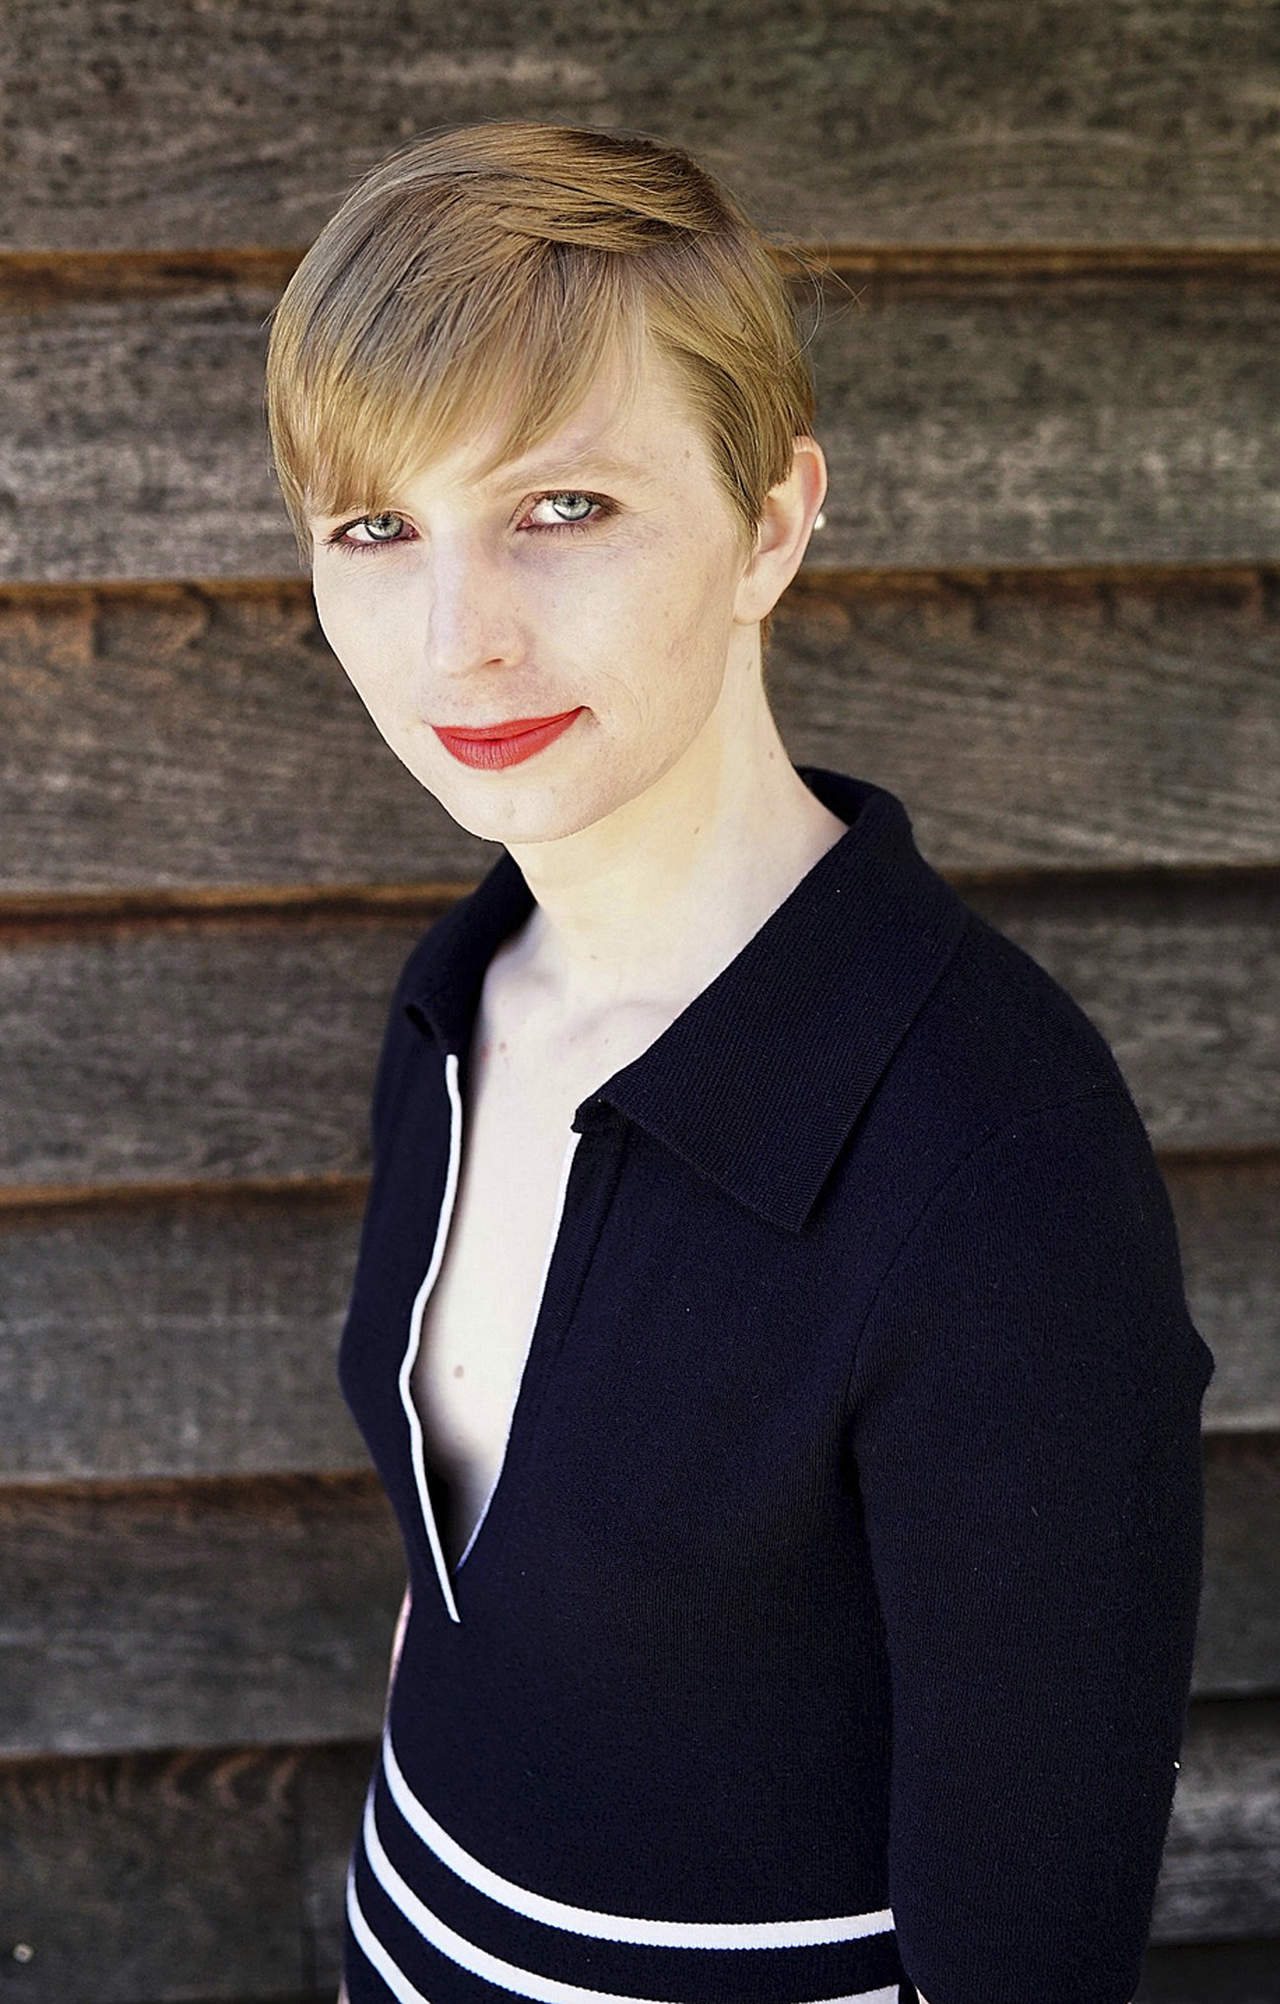 Muestra su rostro Chelsea Manning como mujer tras salir de prisión